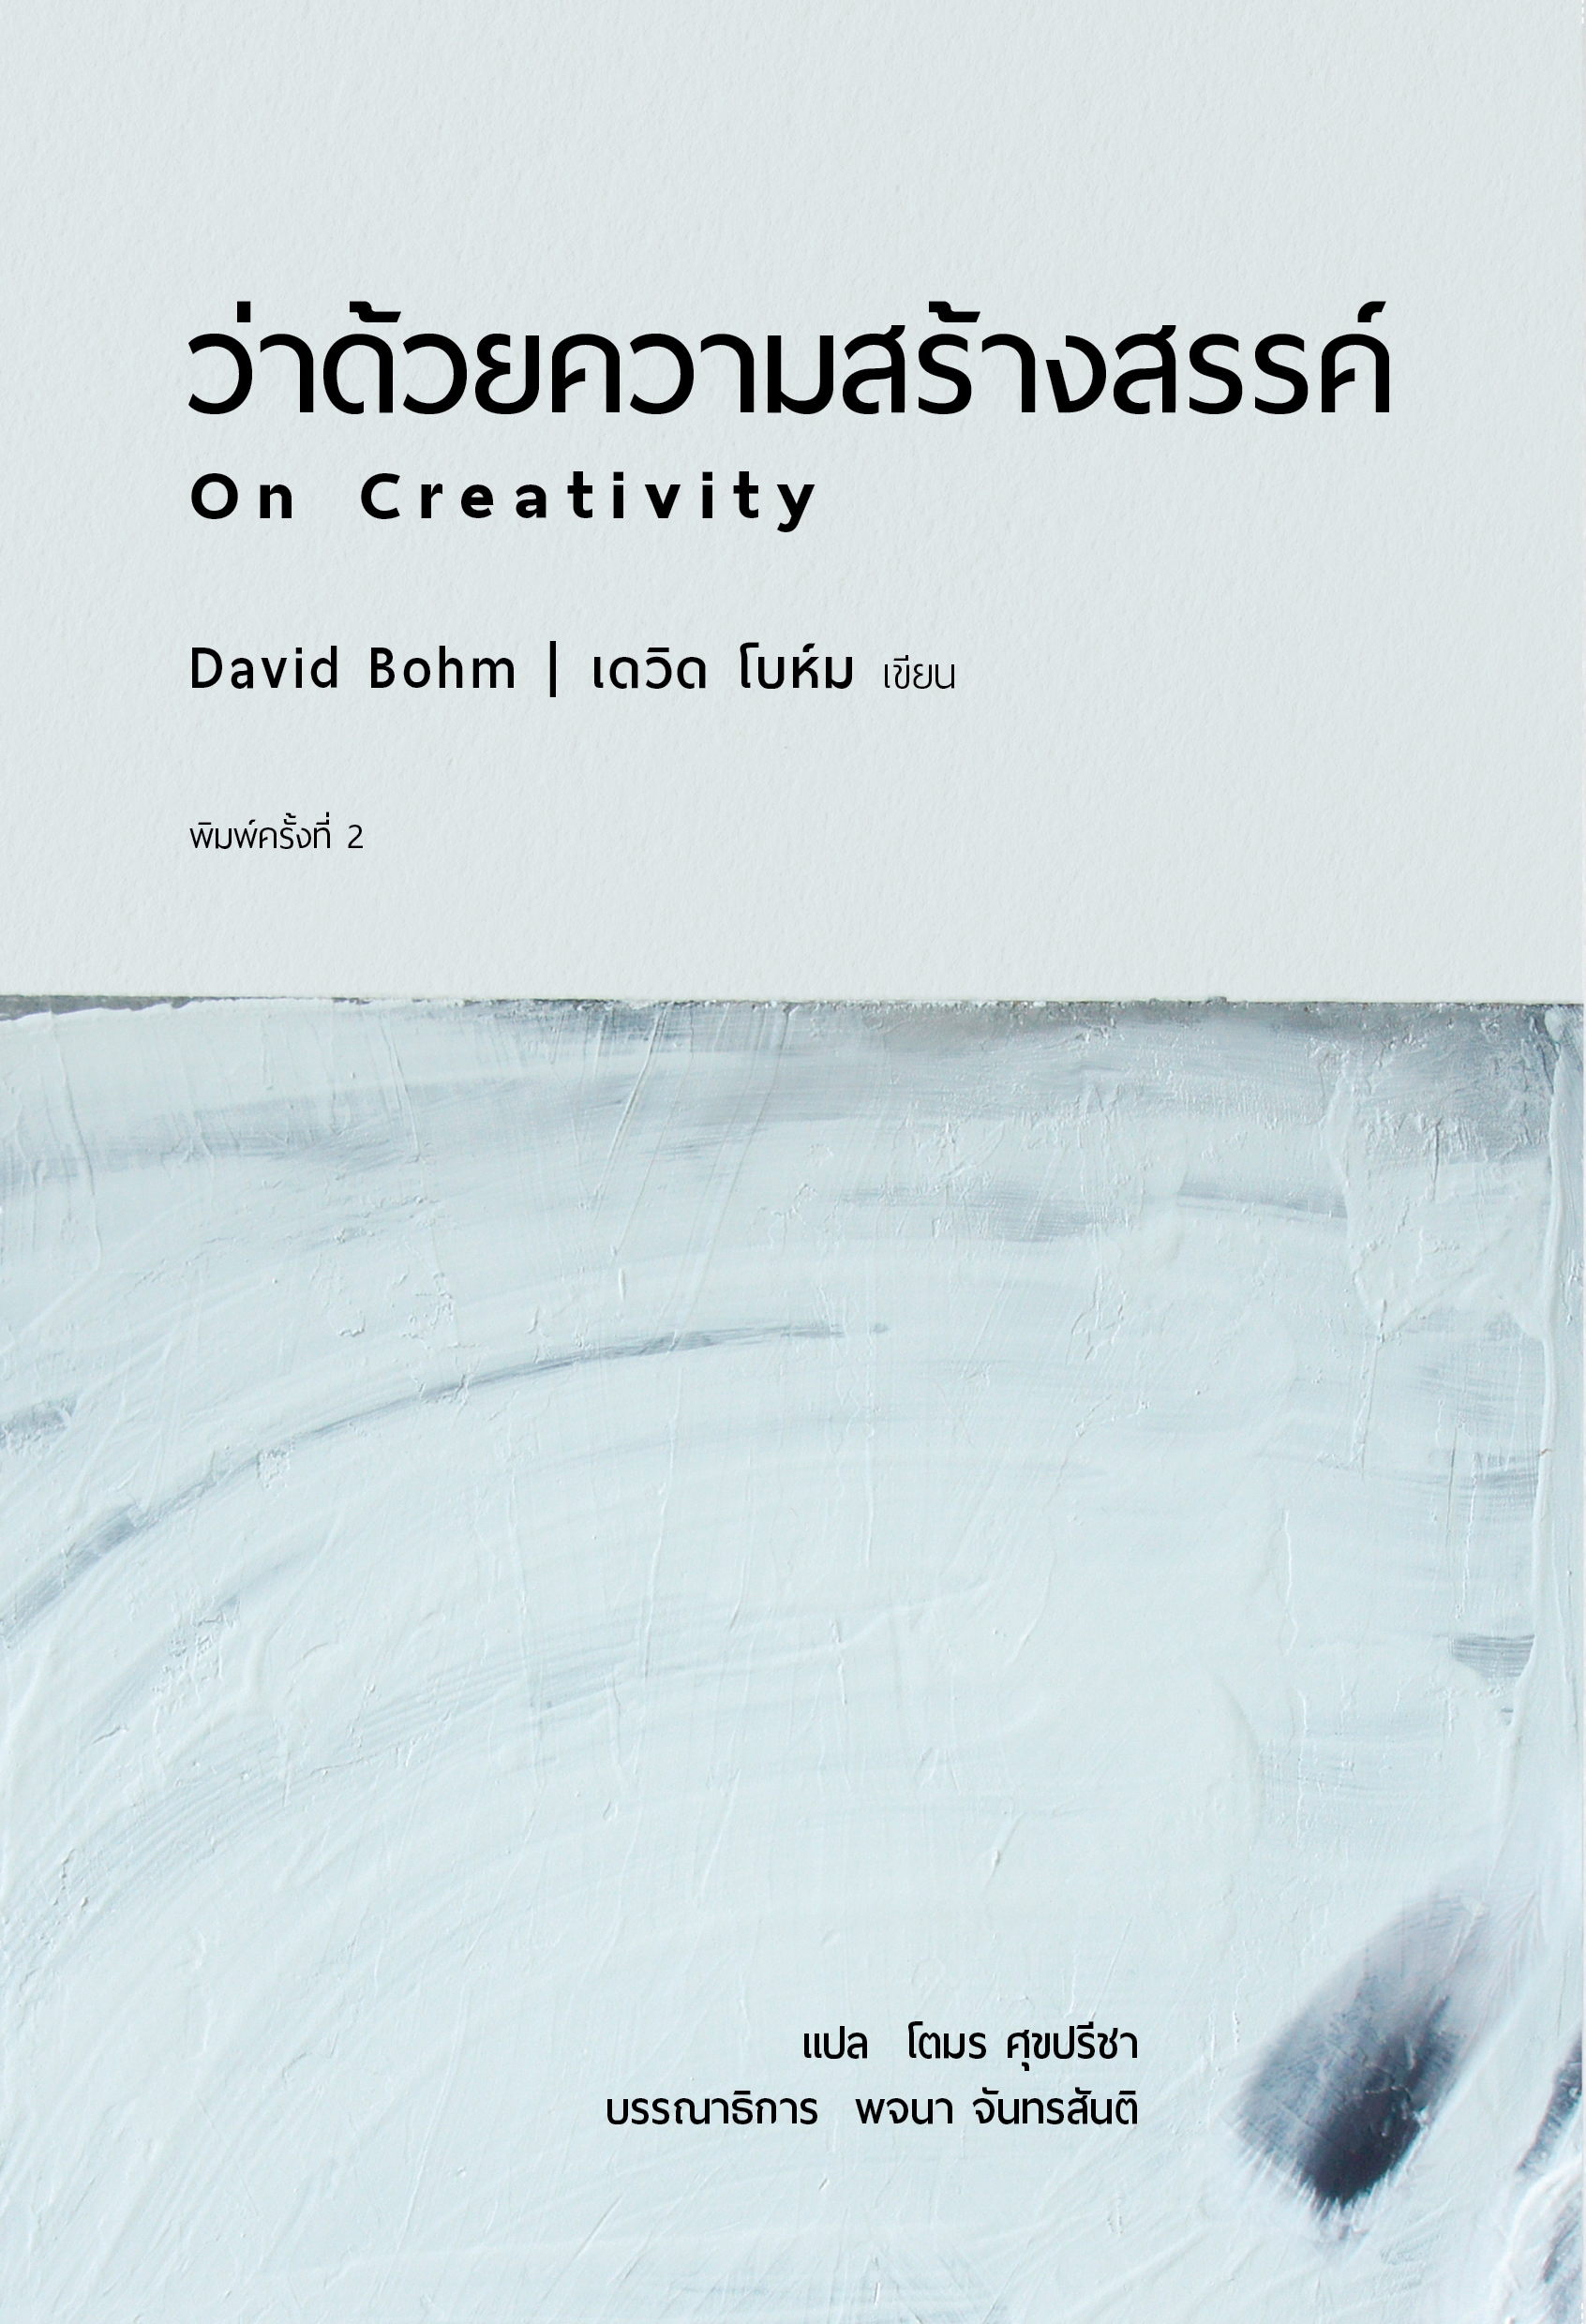 ว่าด้วยความสร้างสรรค์ (พิมพ์ครั้งที่ 2) On Creativity / เดวิด โบห์ม (David Bohm)  / ผู้แปล: โตมร ศุขปรีชา